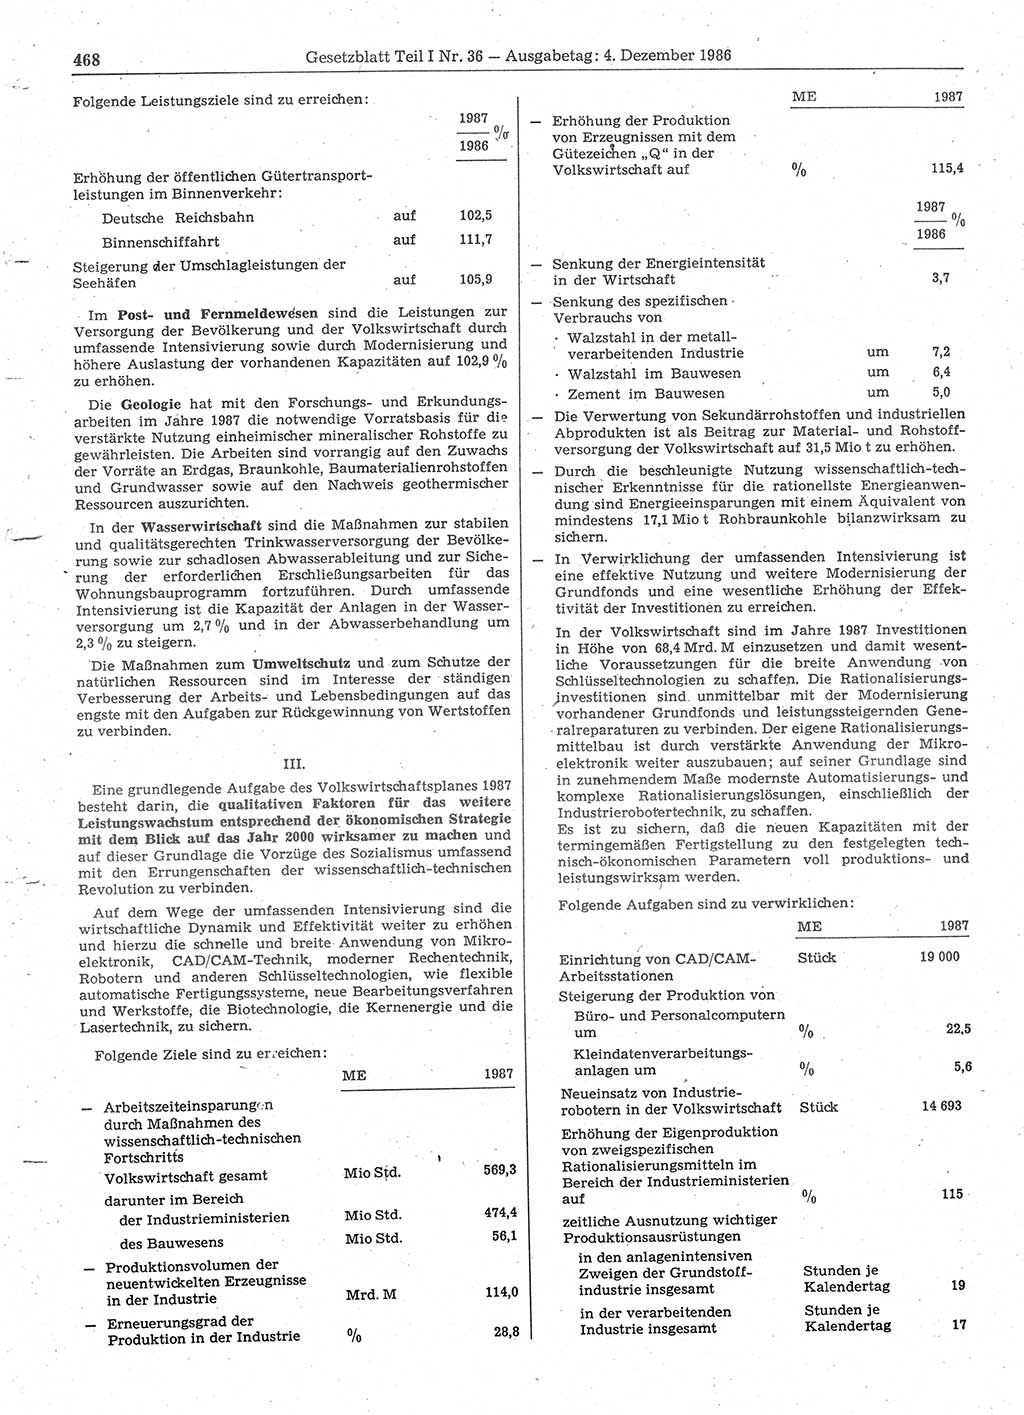 Gesetzblatt (GBl.) der Deutschen Demokratischen Republik (DDR) Teil Ⅰ 1986, Seite 468 (GBl. DDR Ⅰ 1986, S. 468)